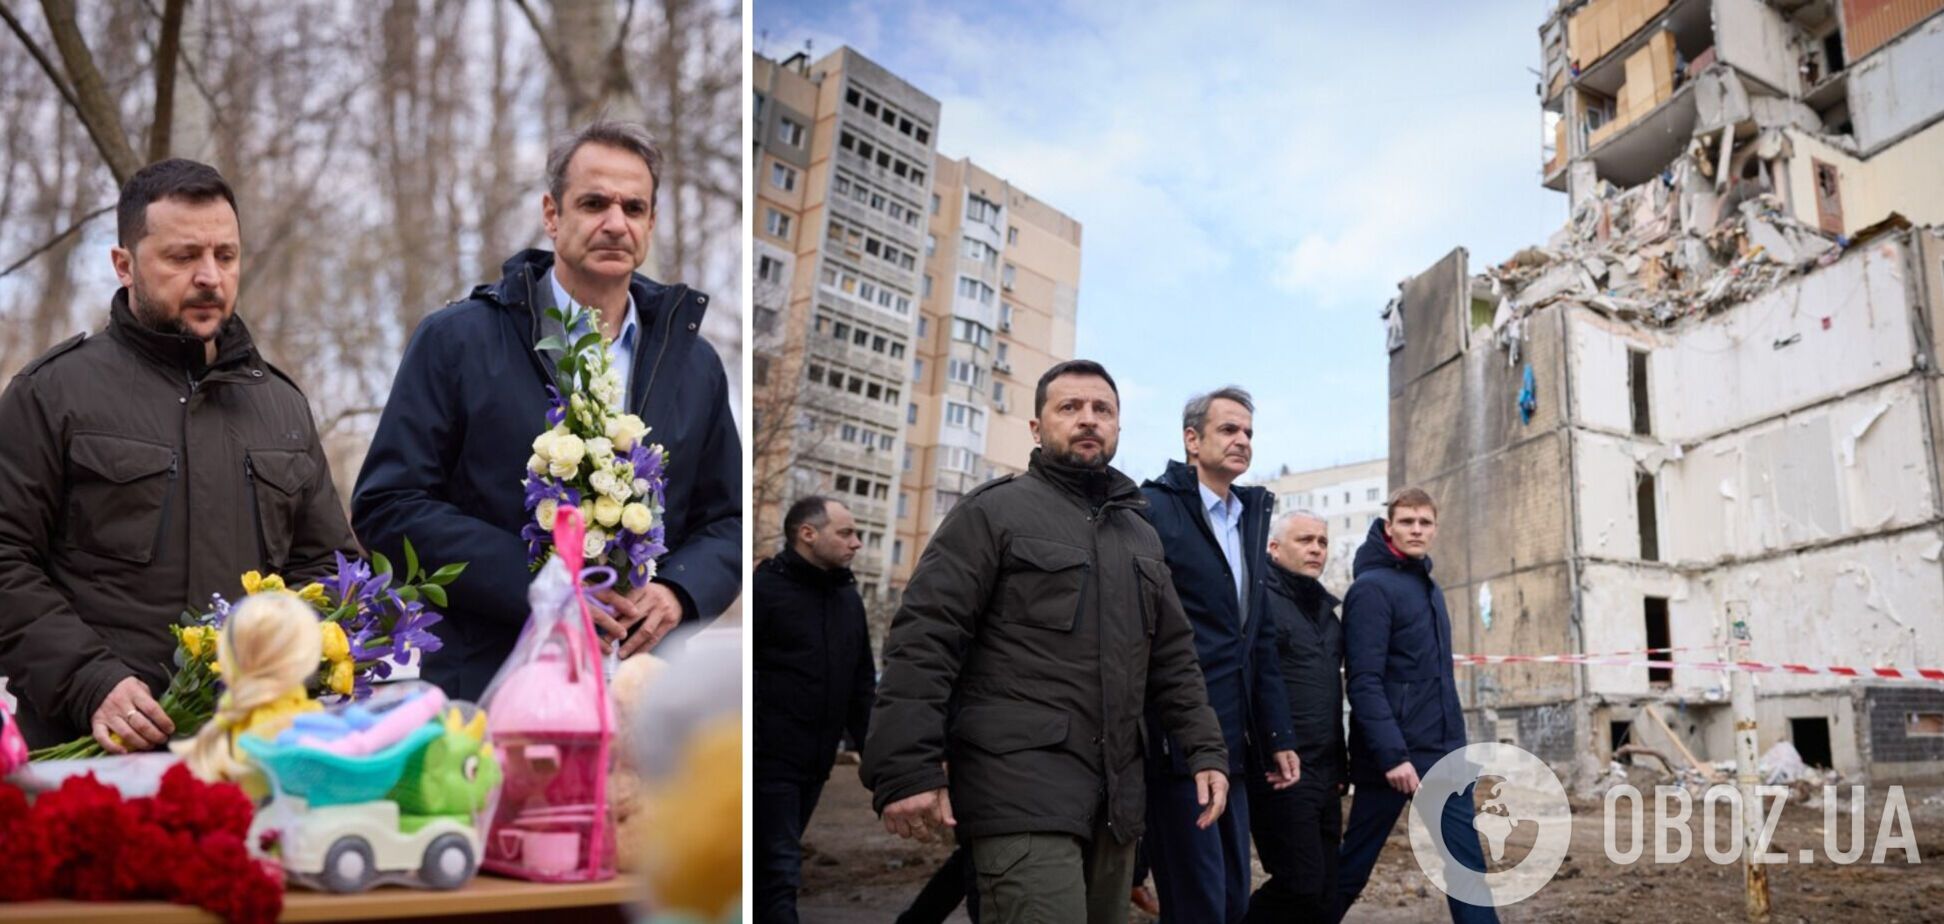 Зеленский с премьером Греции в Одессе почтили память погибших в результате попадания российского 'Шахеда' в жилой дом. Фото и видео